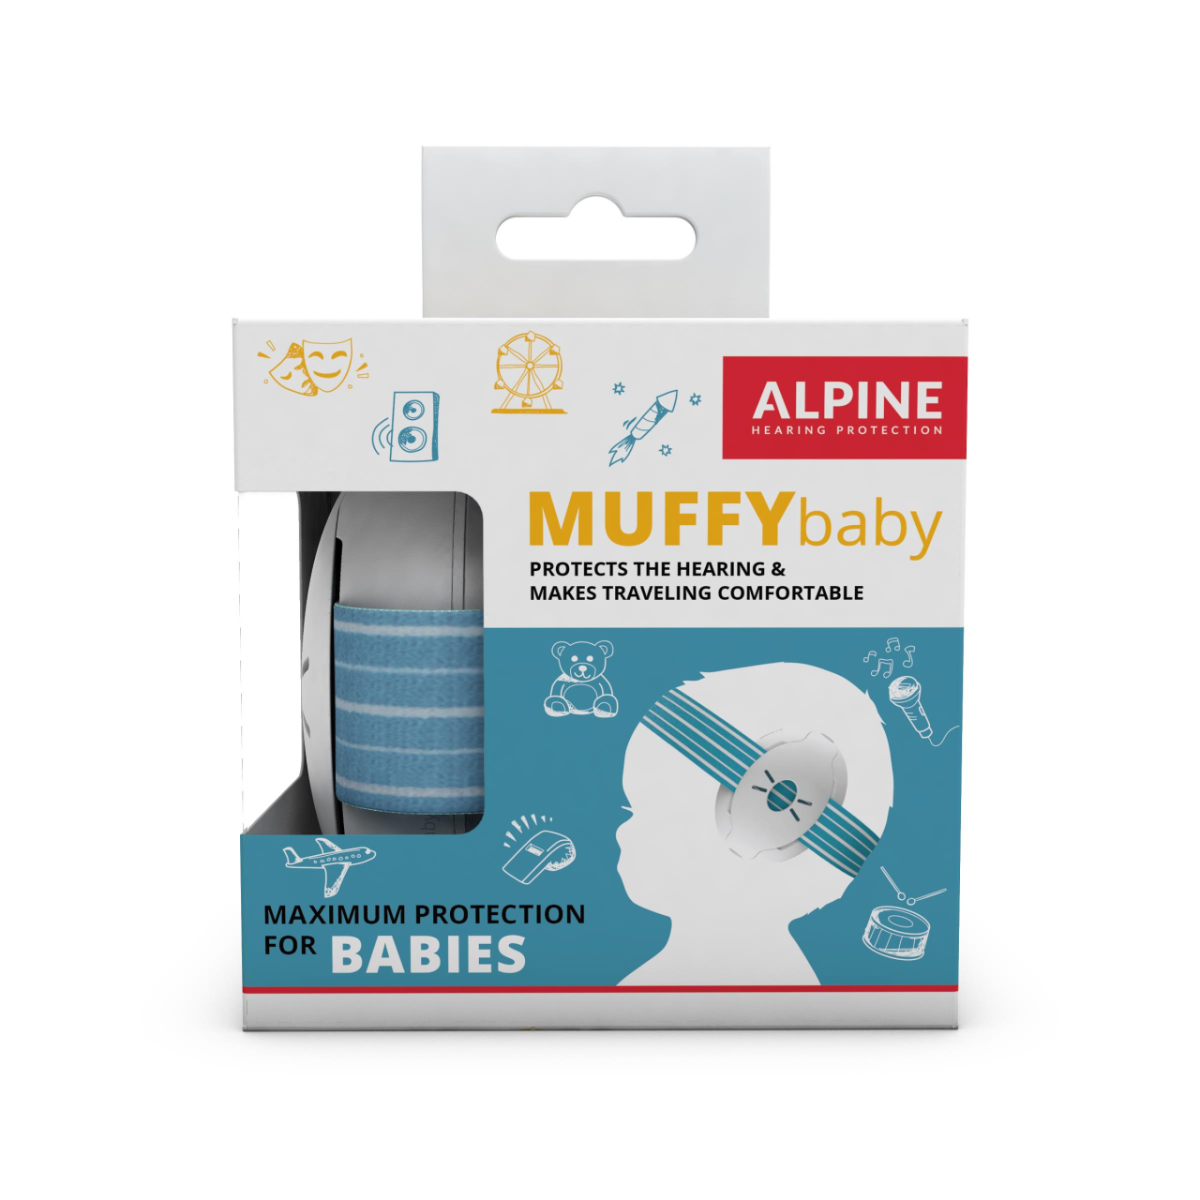 Casti antifonice pentru bebelusi de la 0-3 ani Muffy Baby Blue ALP24944, 1 bucata, Alpine